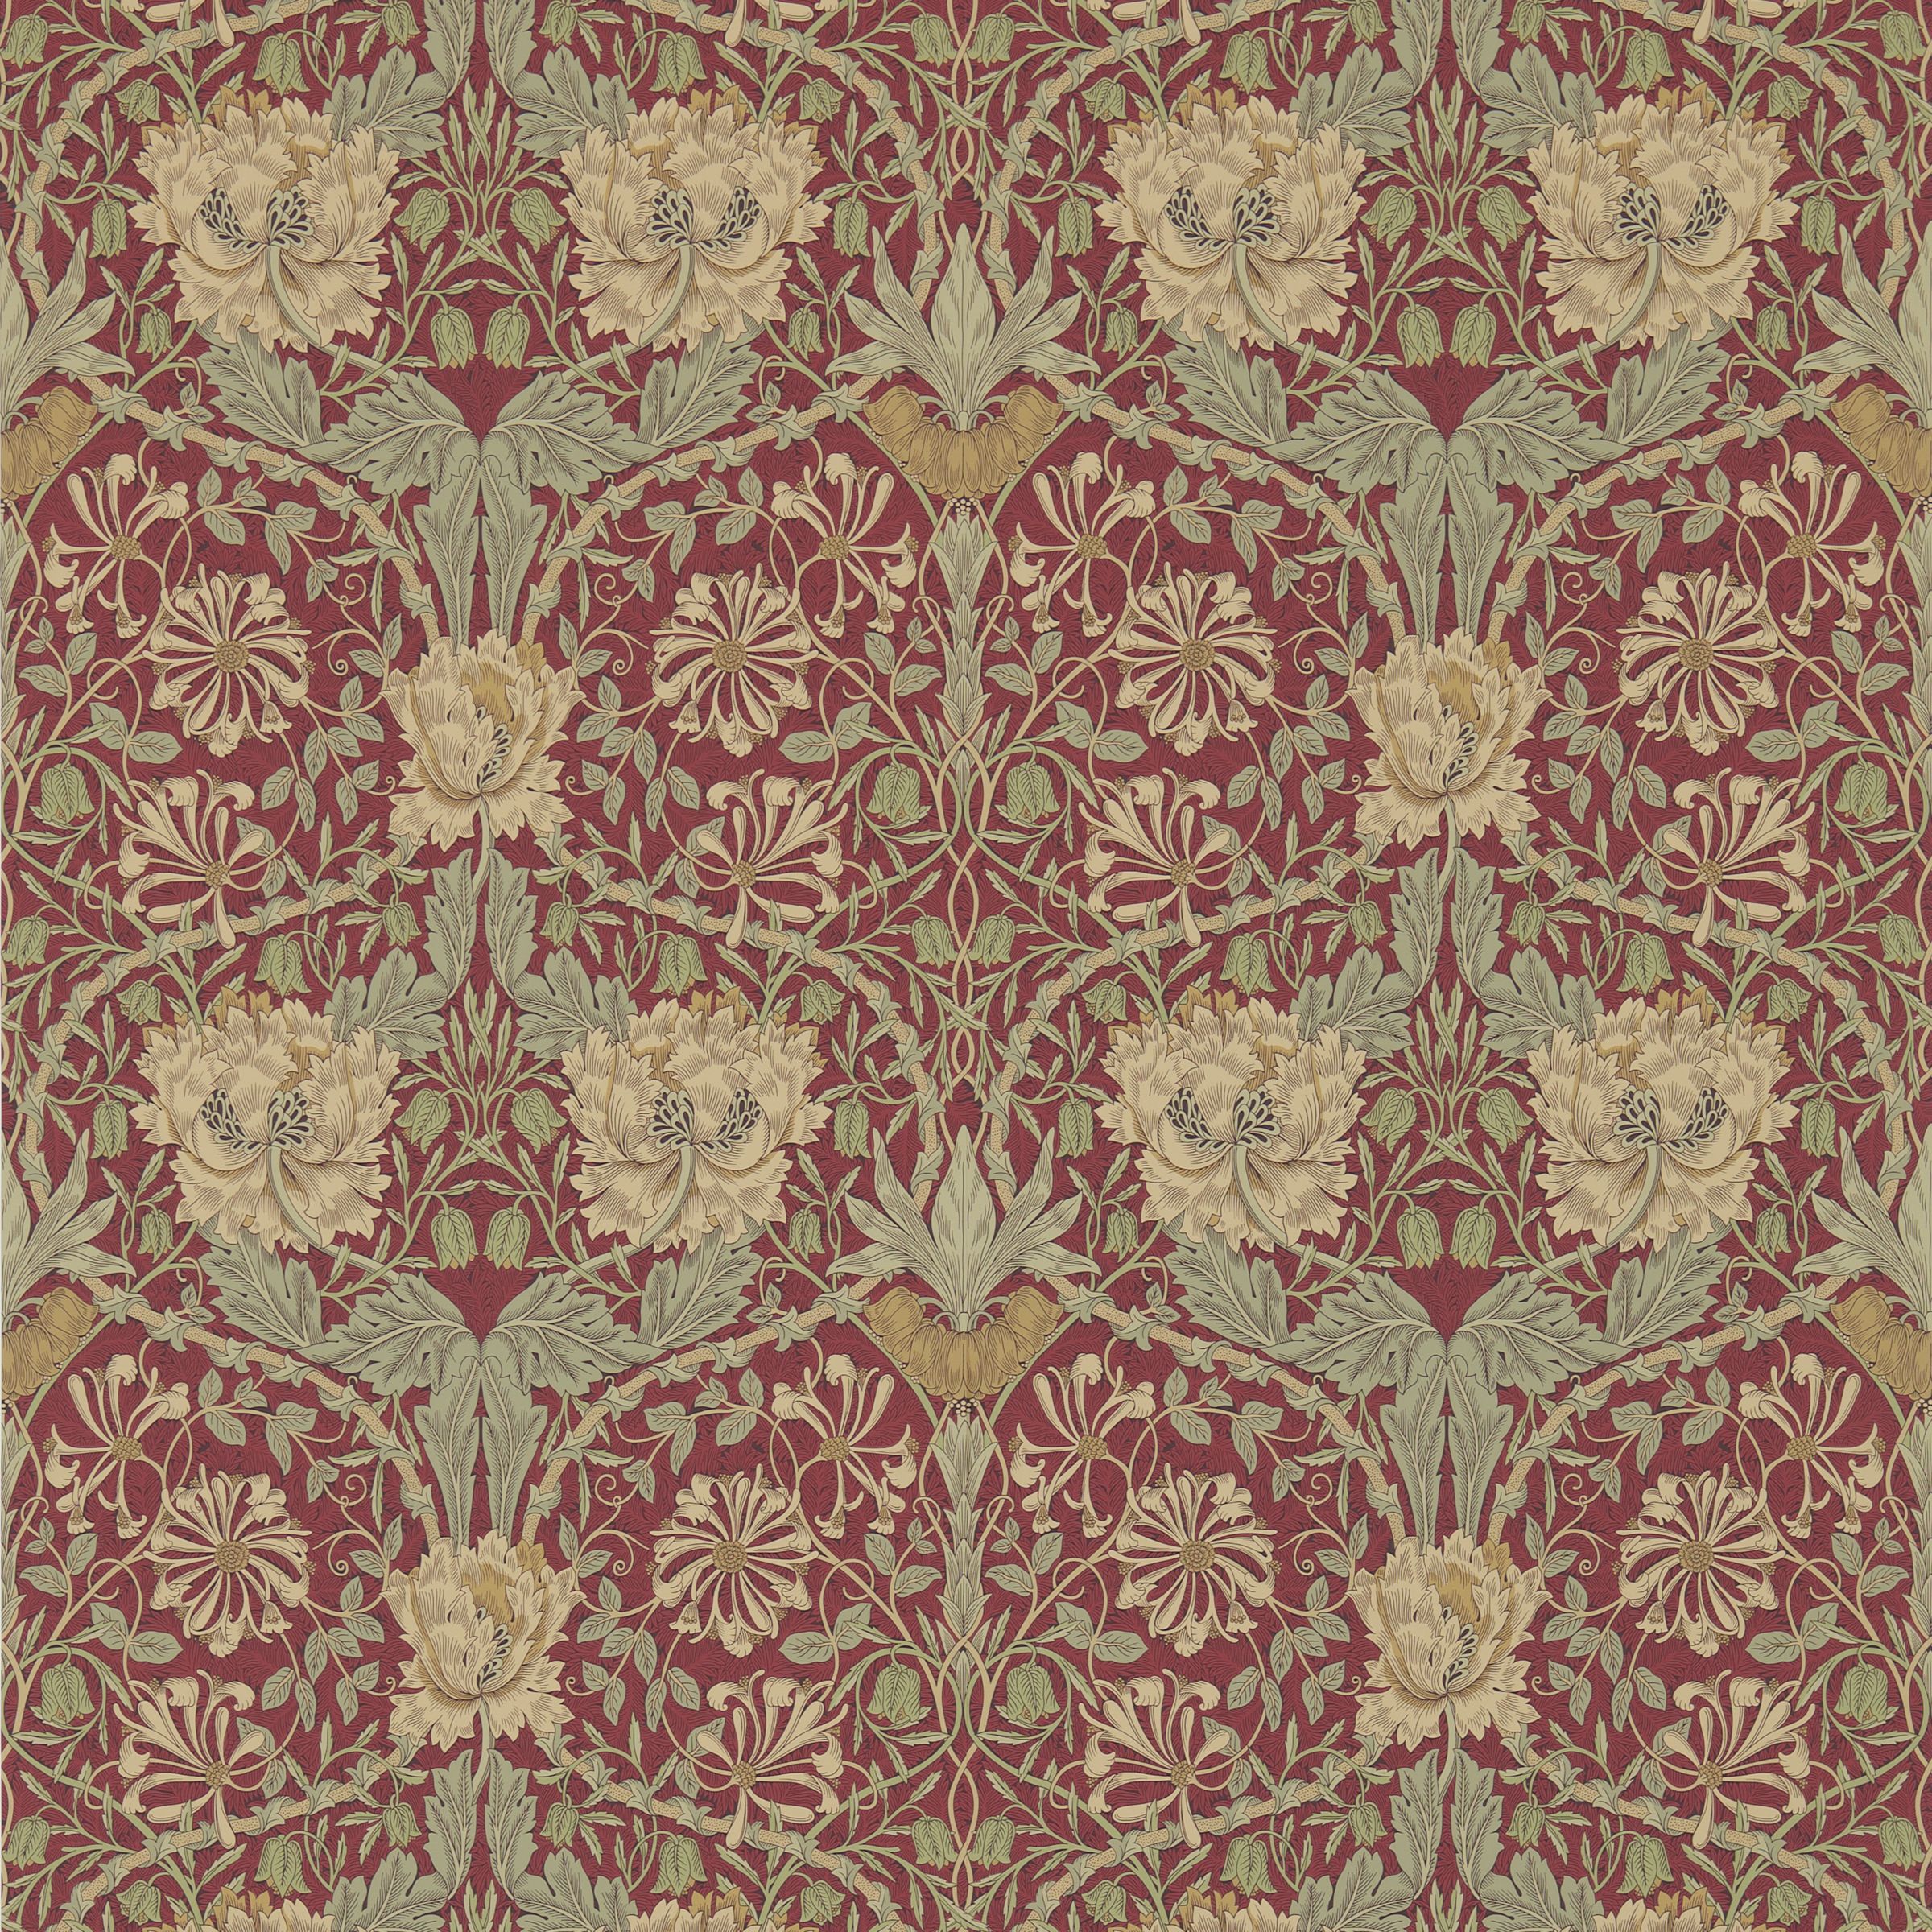 Morris & Co. Honeysuckle & Tulip Wallpaper, Red/Gold, DM3W214700